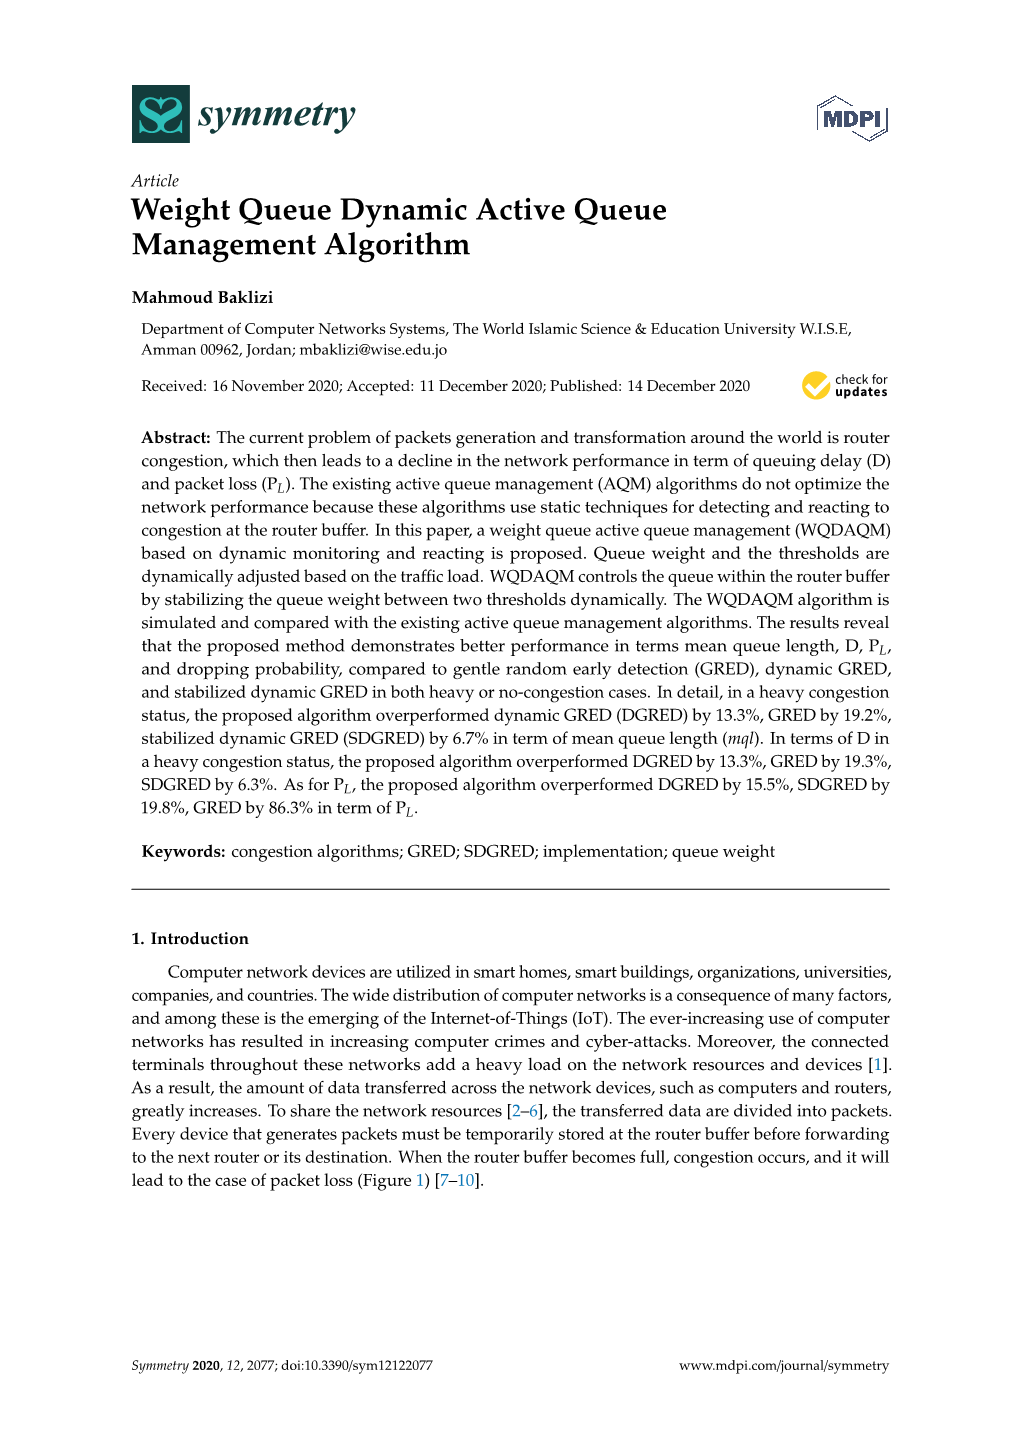 Weight Queue Dynamic Active Queue Management Algorithm